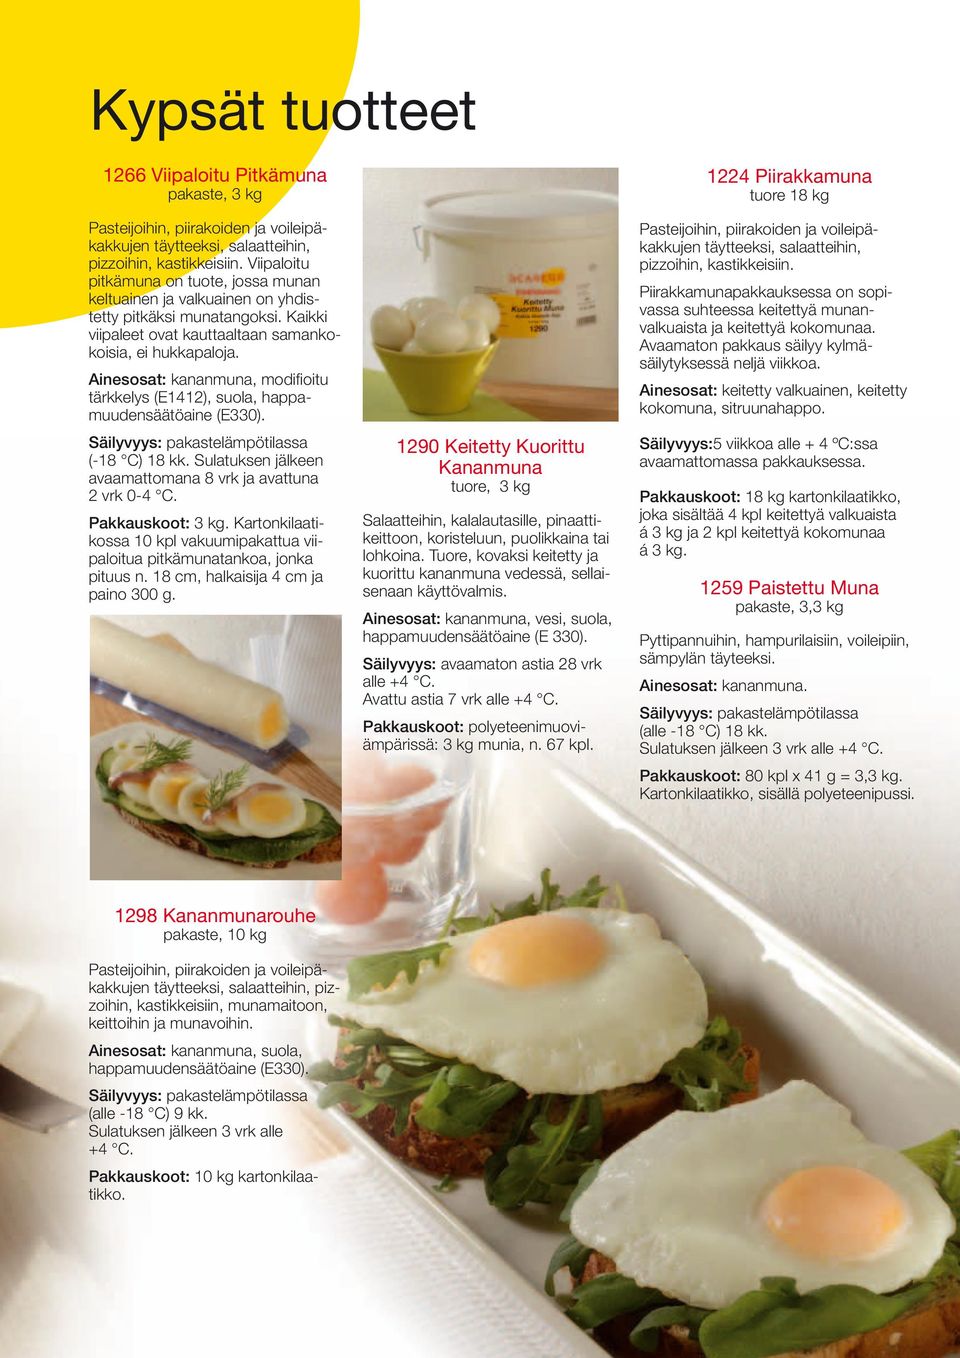 Ainesosat: kananmuna, modifioitu tärkkelys (E1412), suola, happamuudensäätöaine (E330). Säilyvyys: pakastelämpötilassa (-18 C) 18 kk. Sulatuksen jälkeen avaamattomana 8 vrk ja avattuna 2 vrk 0-4 C.